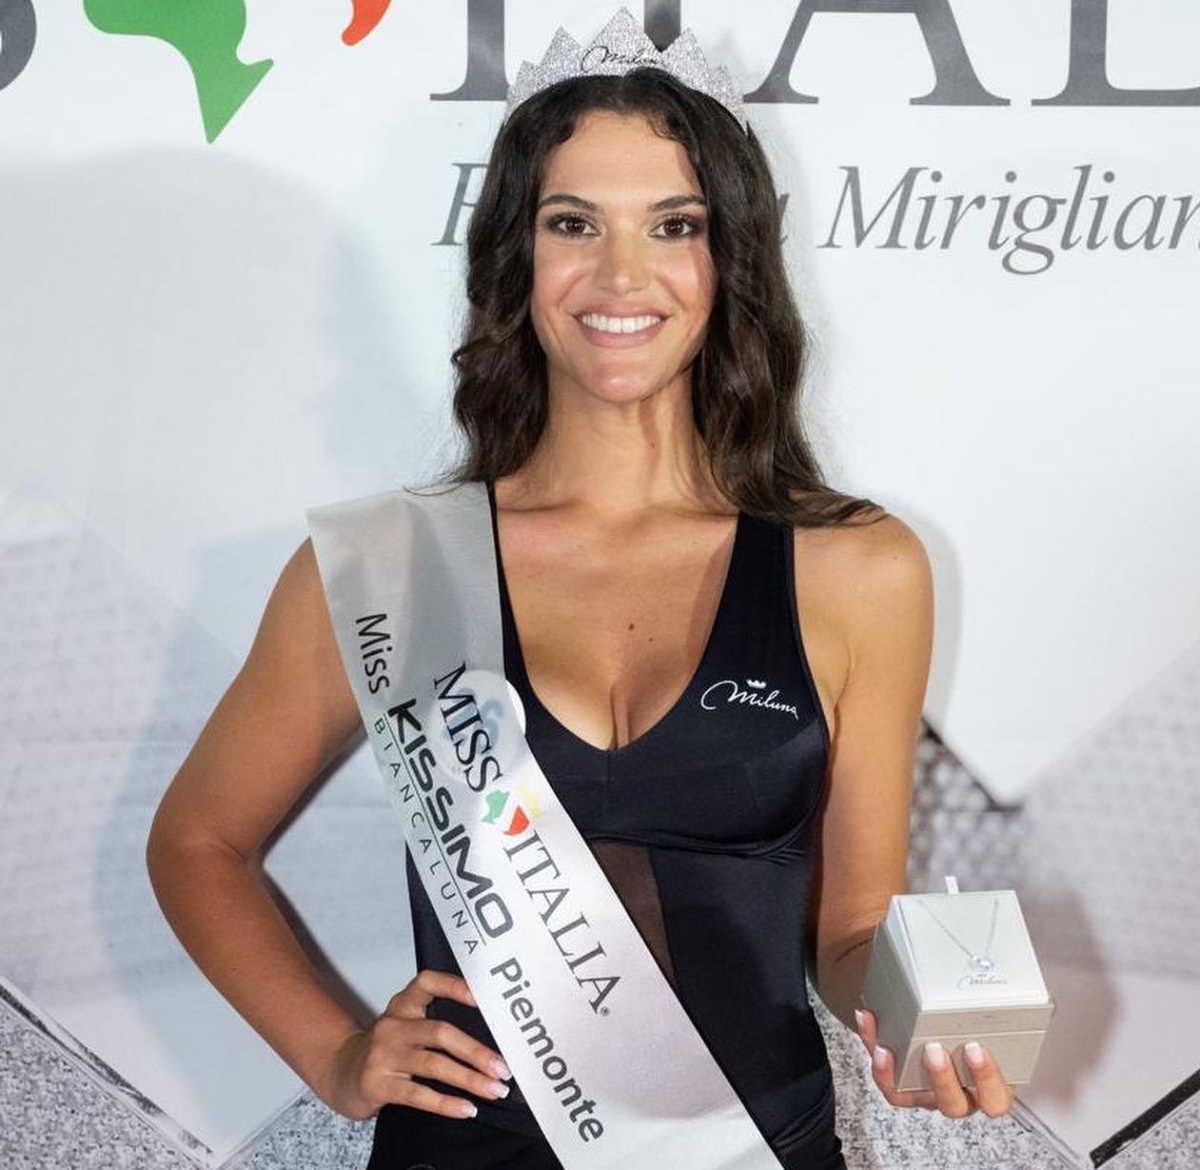 BORGARO - Giulia Giada Cordaro è prefinalista al concorso nazionale di Miss Italia 2022